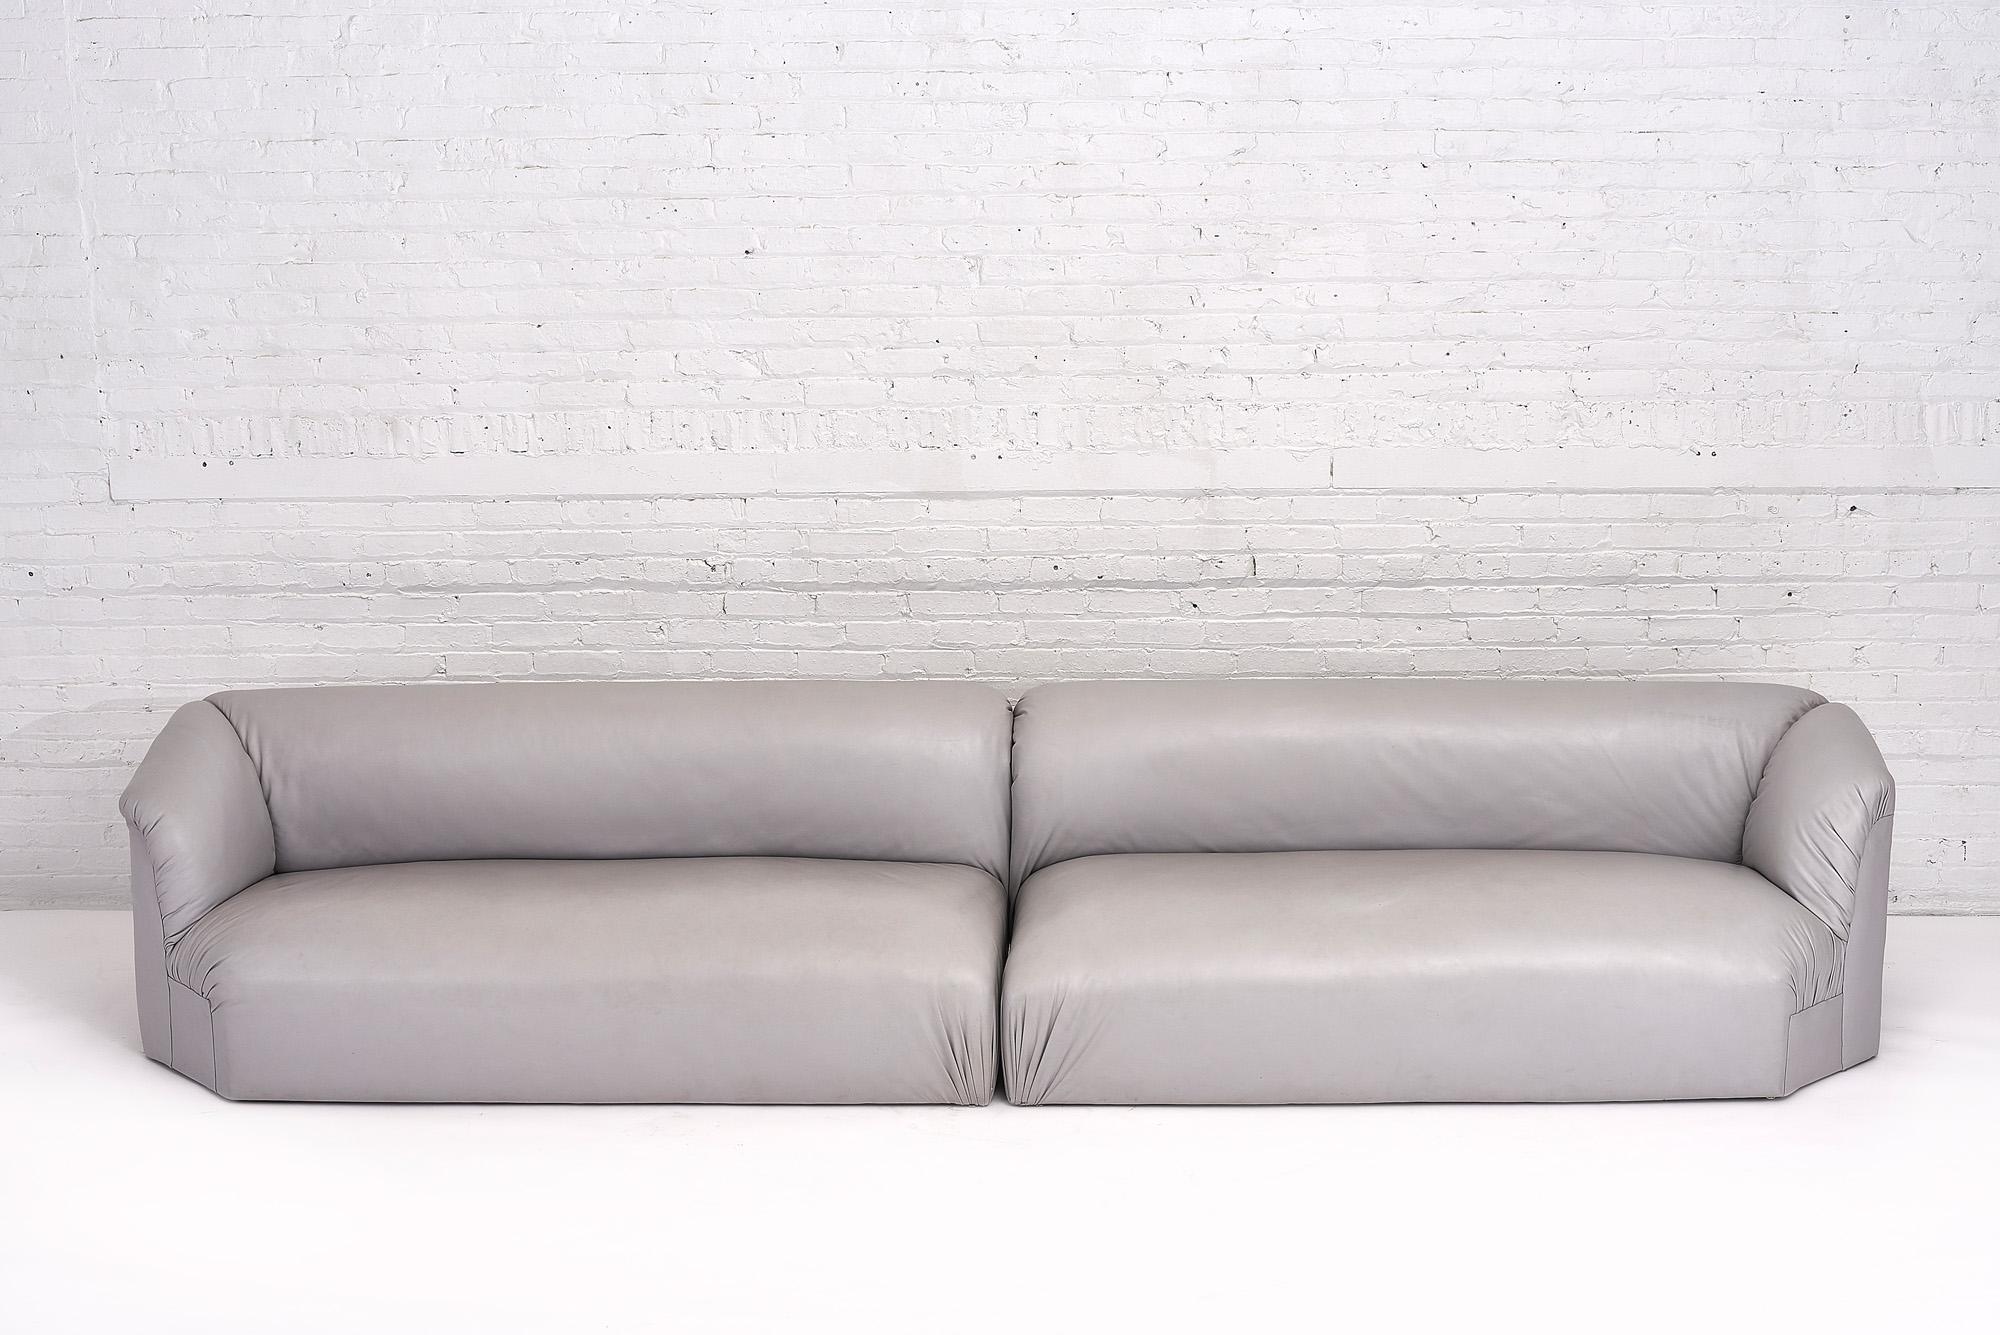 Postmodernes 2-teiliges graues Leder Sektionssofa. 2 Stück modulare Sofa kann verwendet werden, wie gezeigt oder in einer Ecke verwendet werden. Hochwertiges, geschmeidiges und glattes graues Leder.